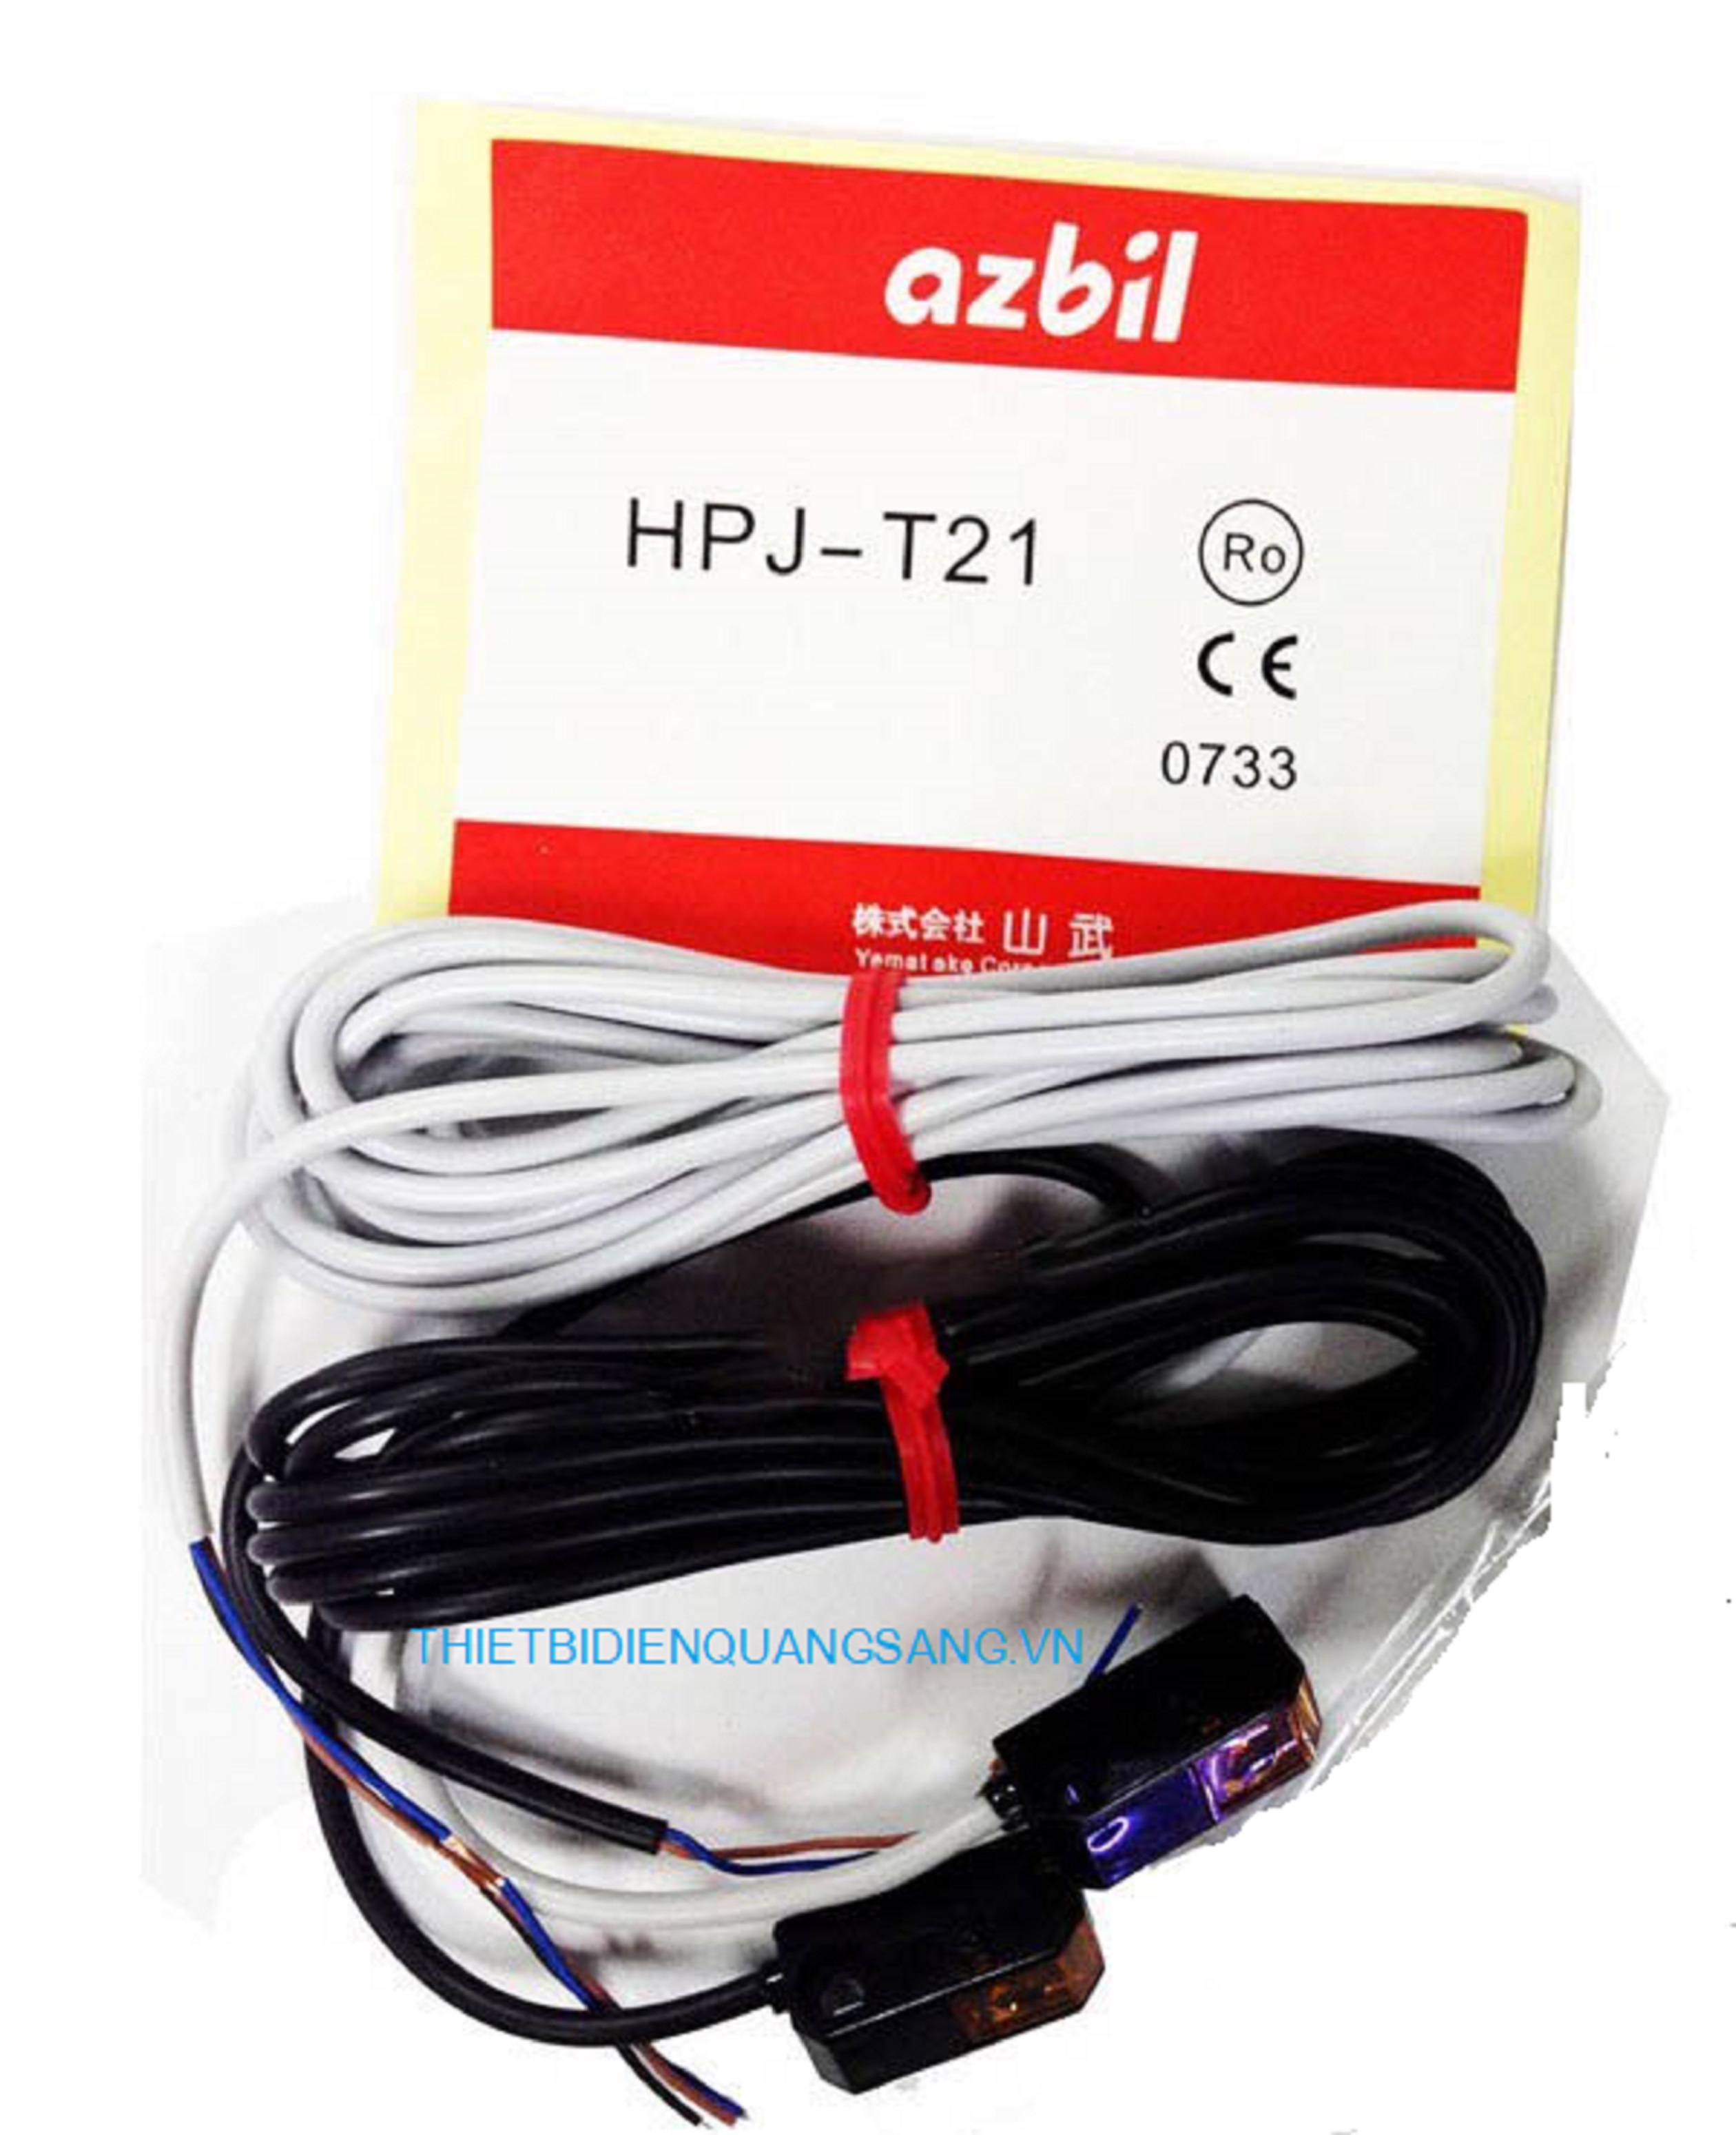 Cảm biến quang điện Omron Azbil HPJ-T21